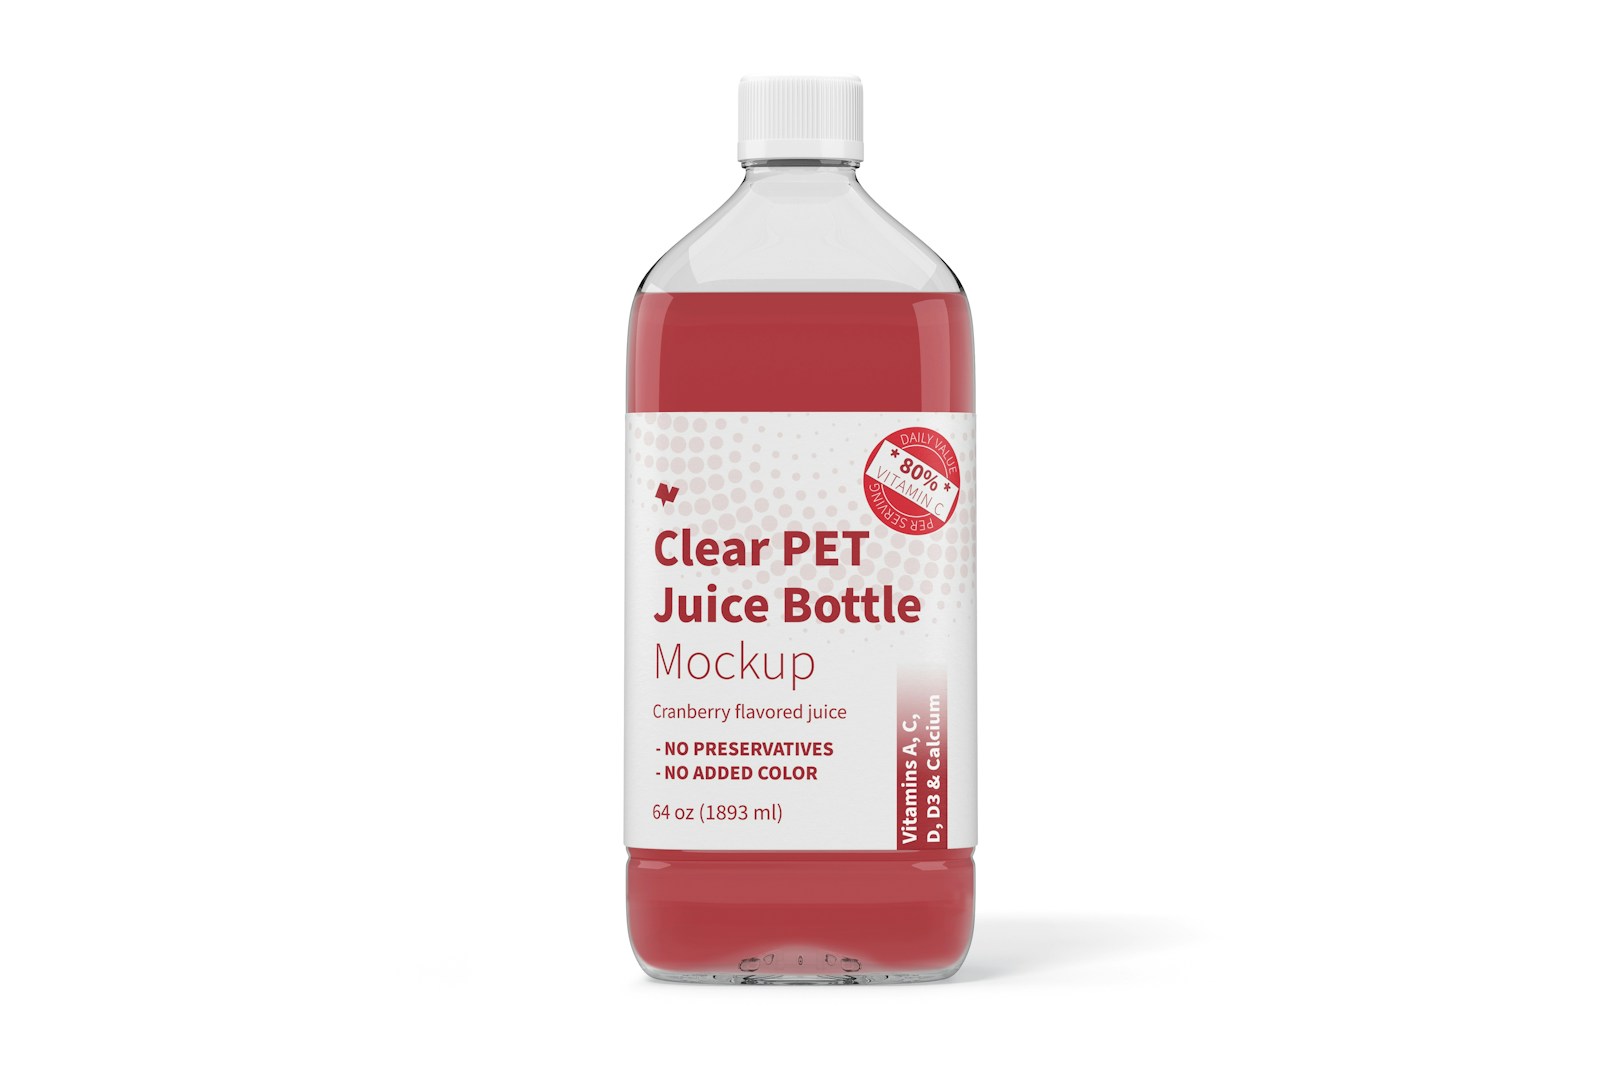 64 oz Clear PET Juice Bottle Mockup, Front View